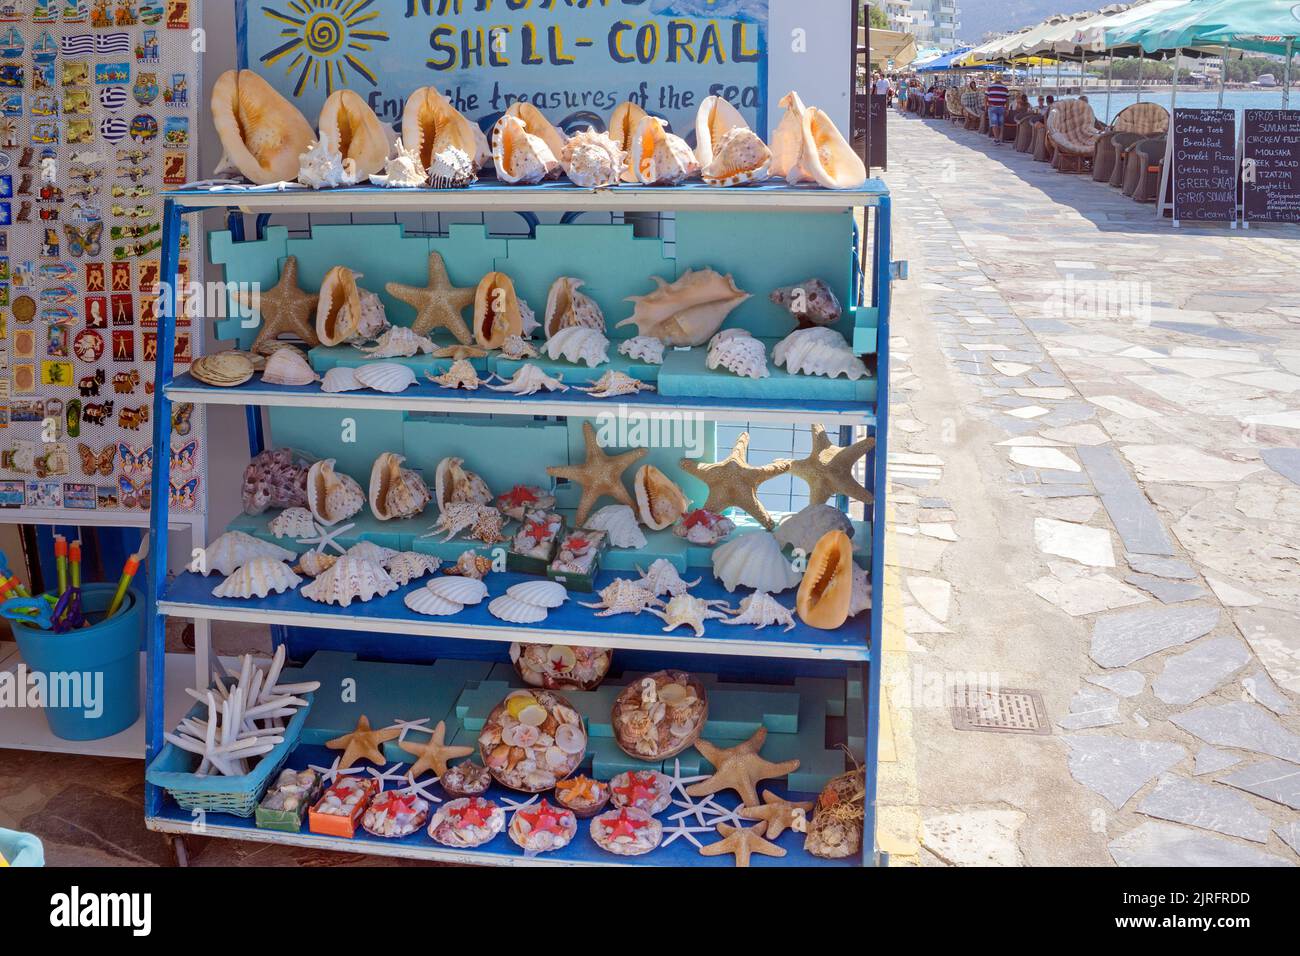 Verkauf von toten Meerestieren in einem Touristenshop auf der Promenade von Ierapetra, Ierapetra ist die suedlichste Stadt Griechenlands, Kreta, Griec Foto Stock